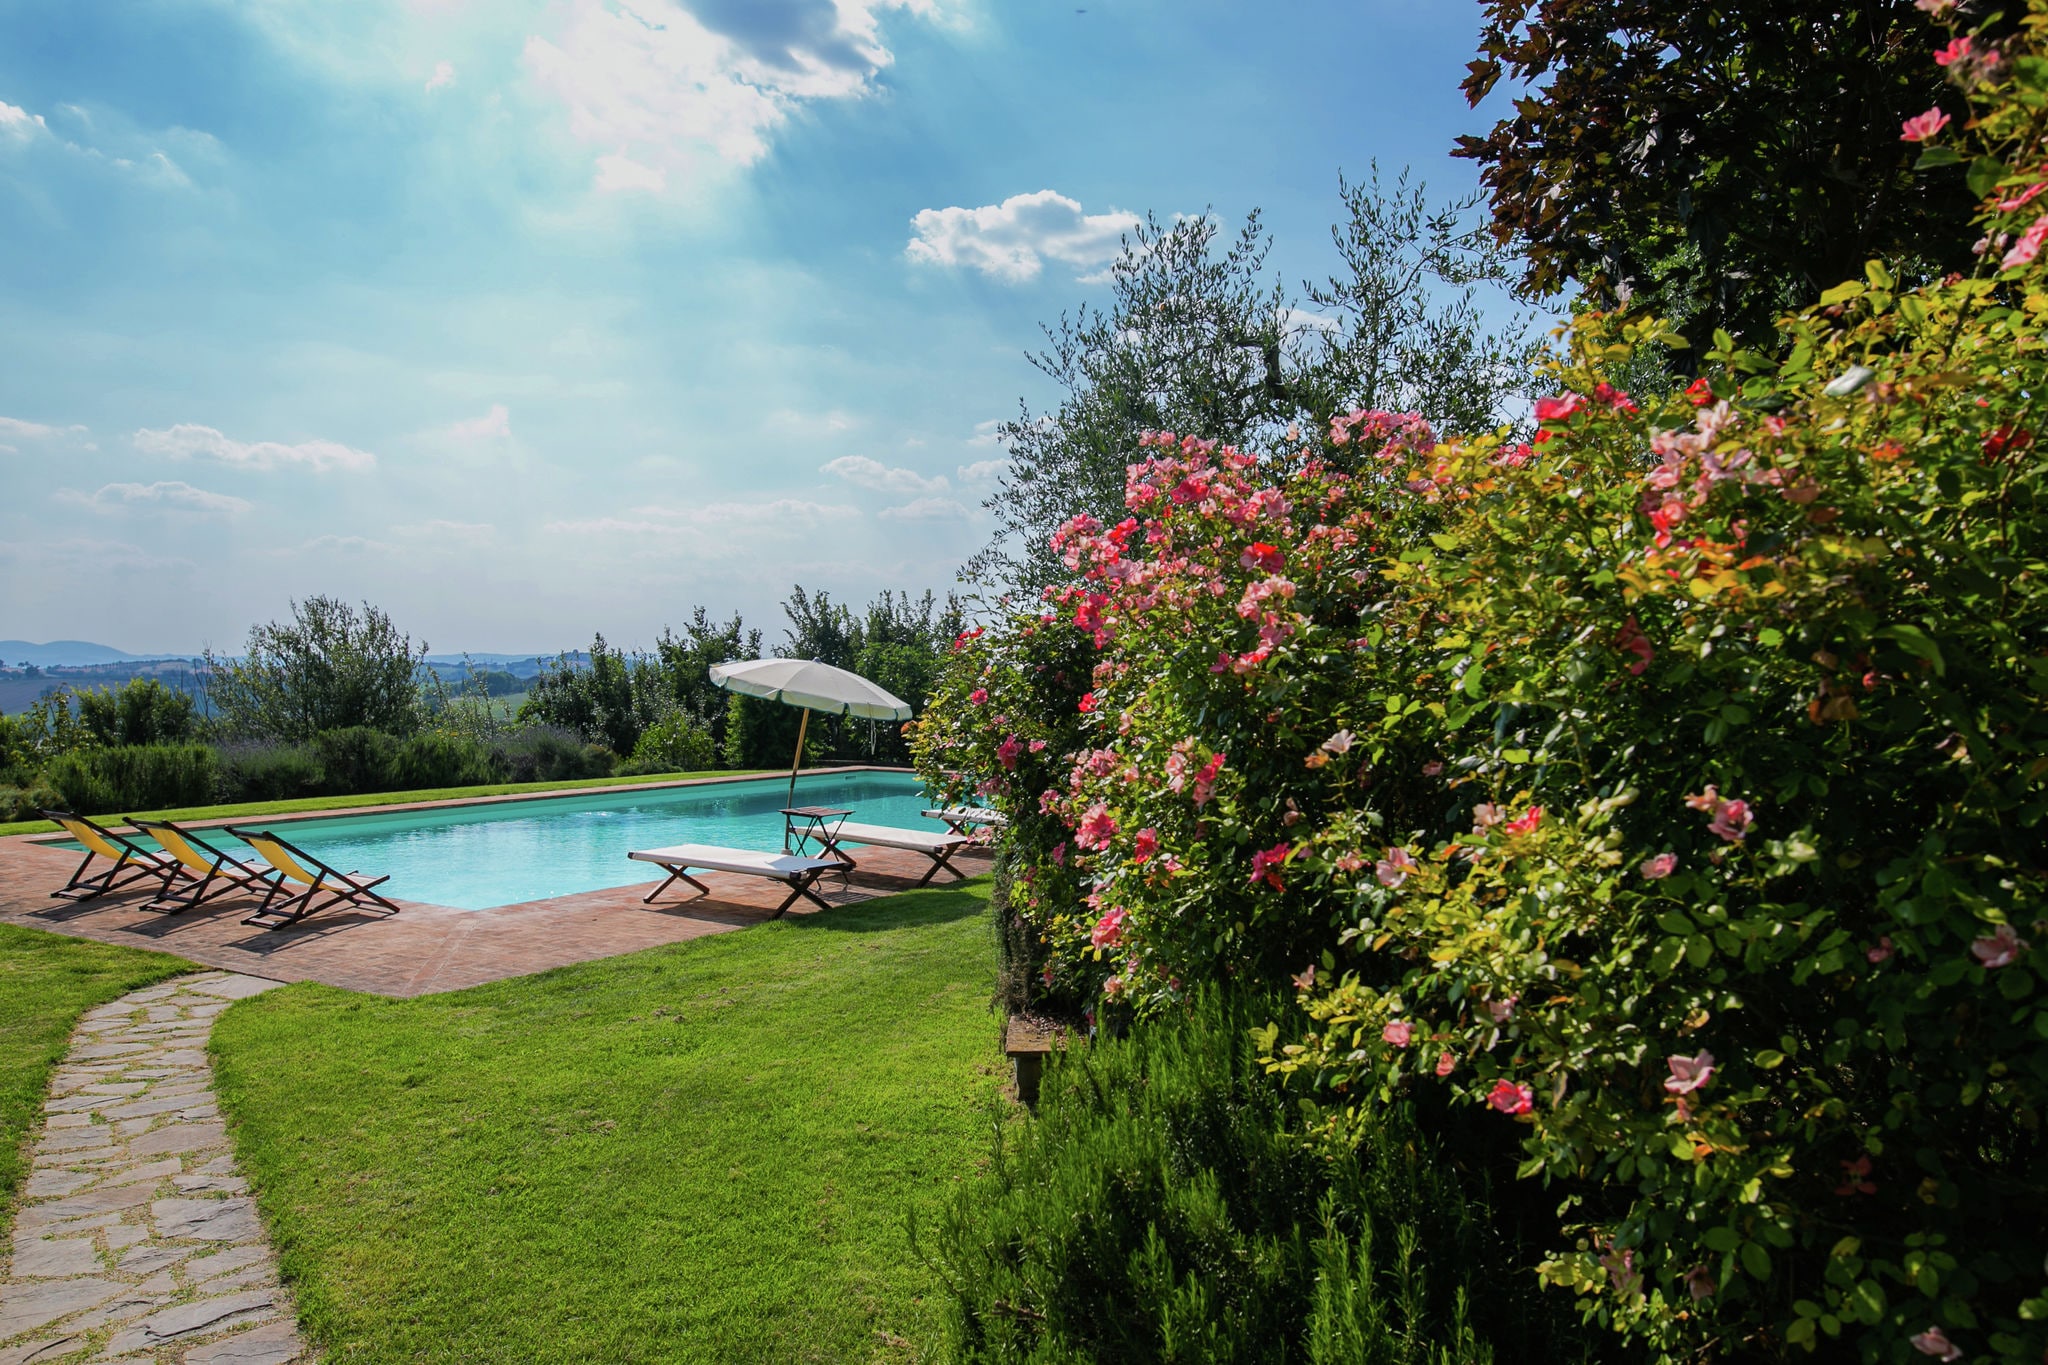 Villa with private swimming pool and spacious garden in the Valdichiana, close to Cortona